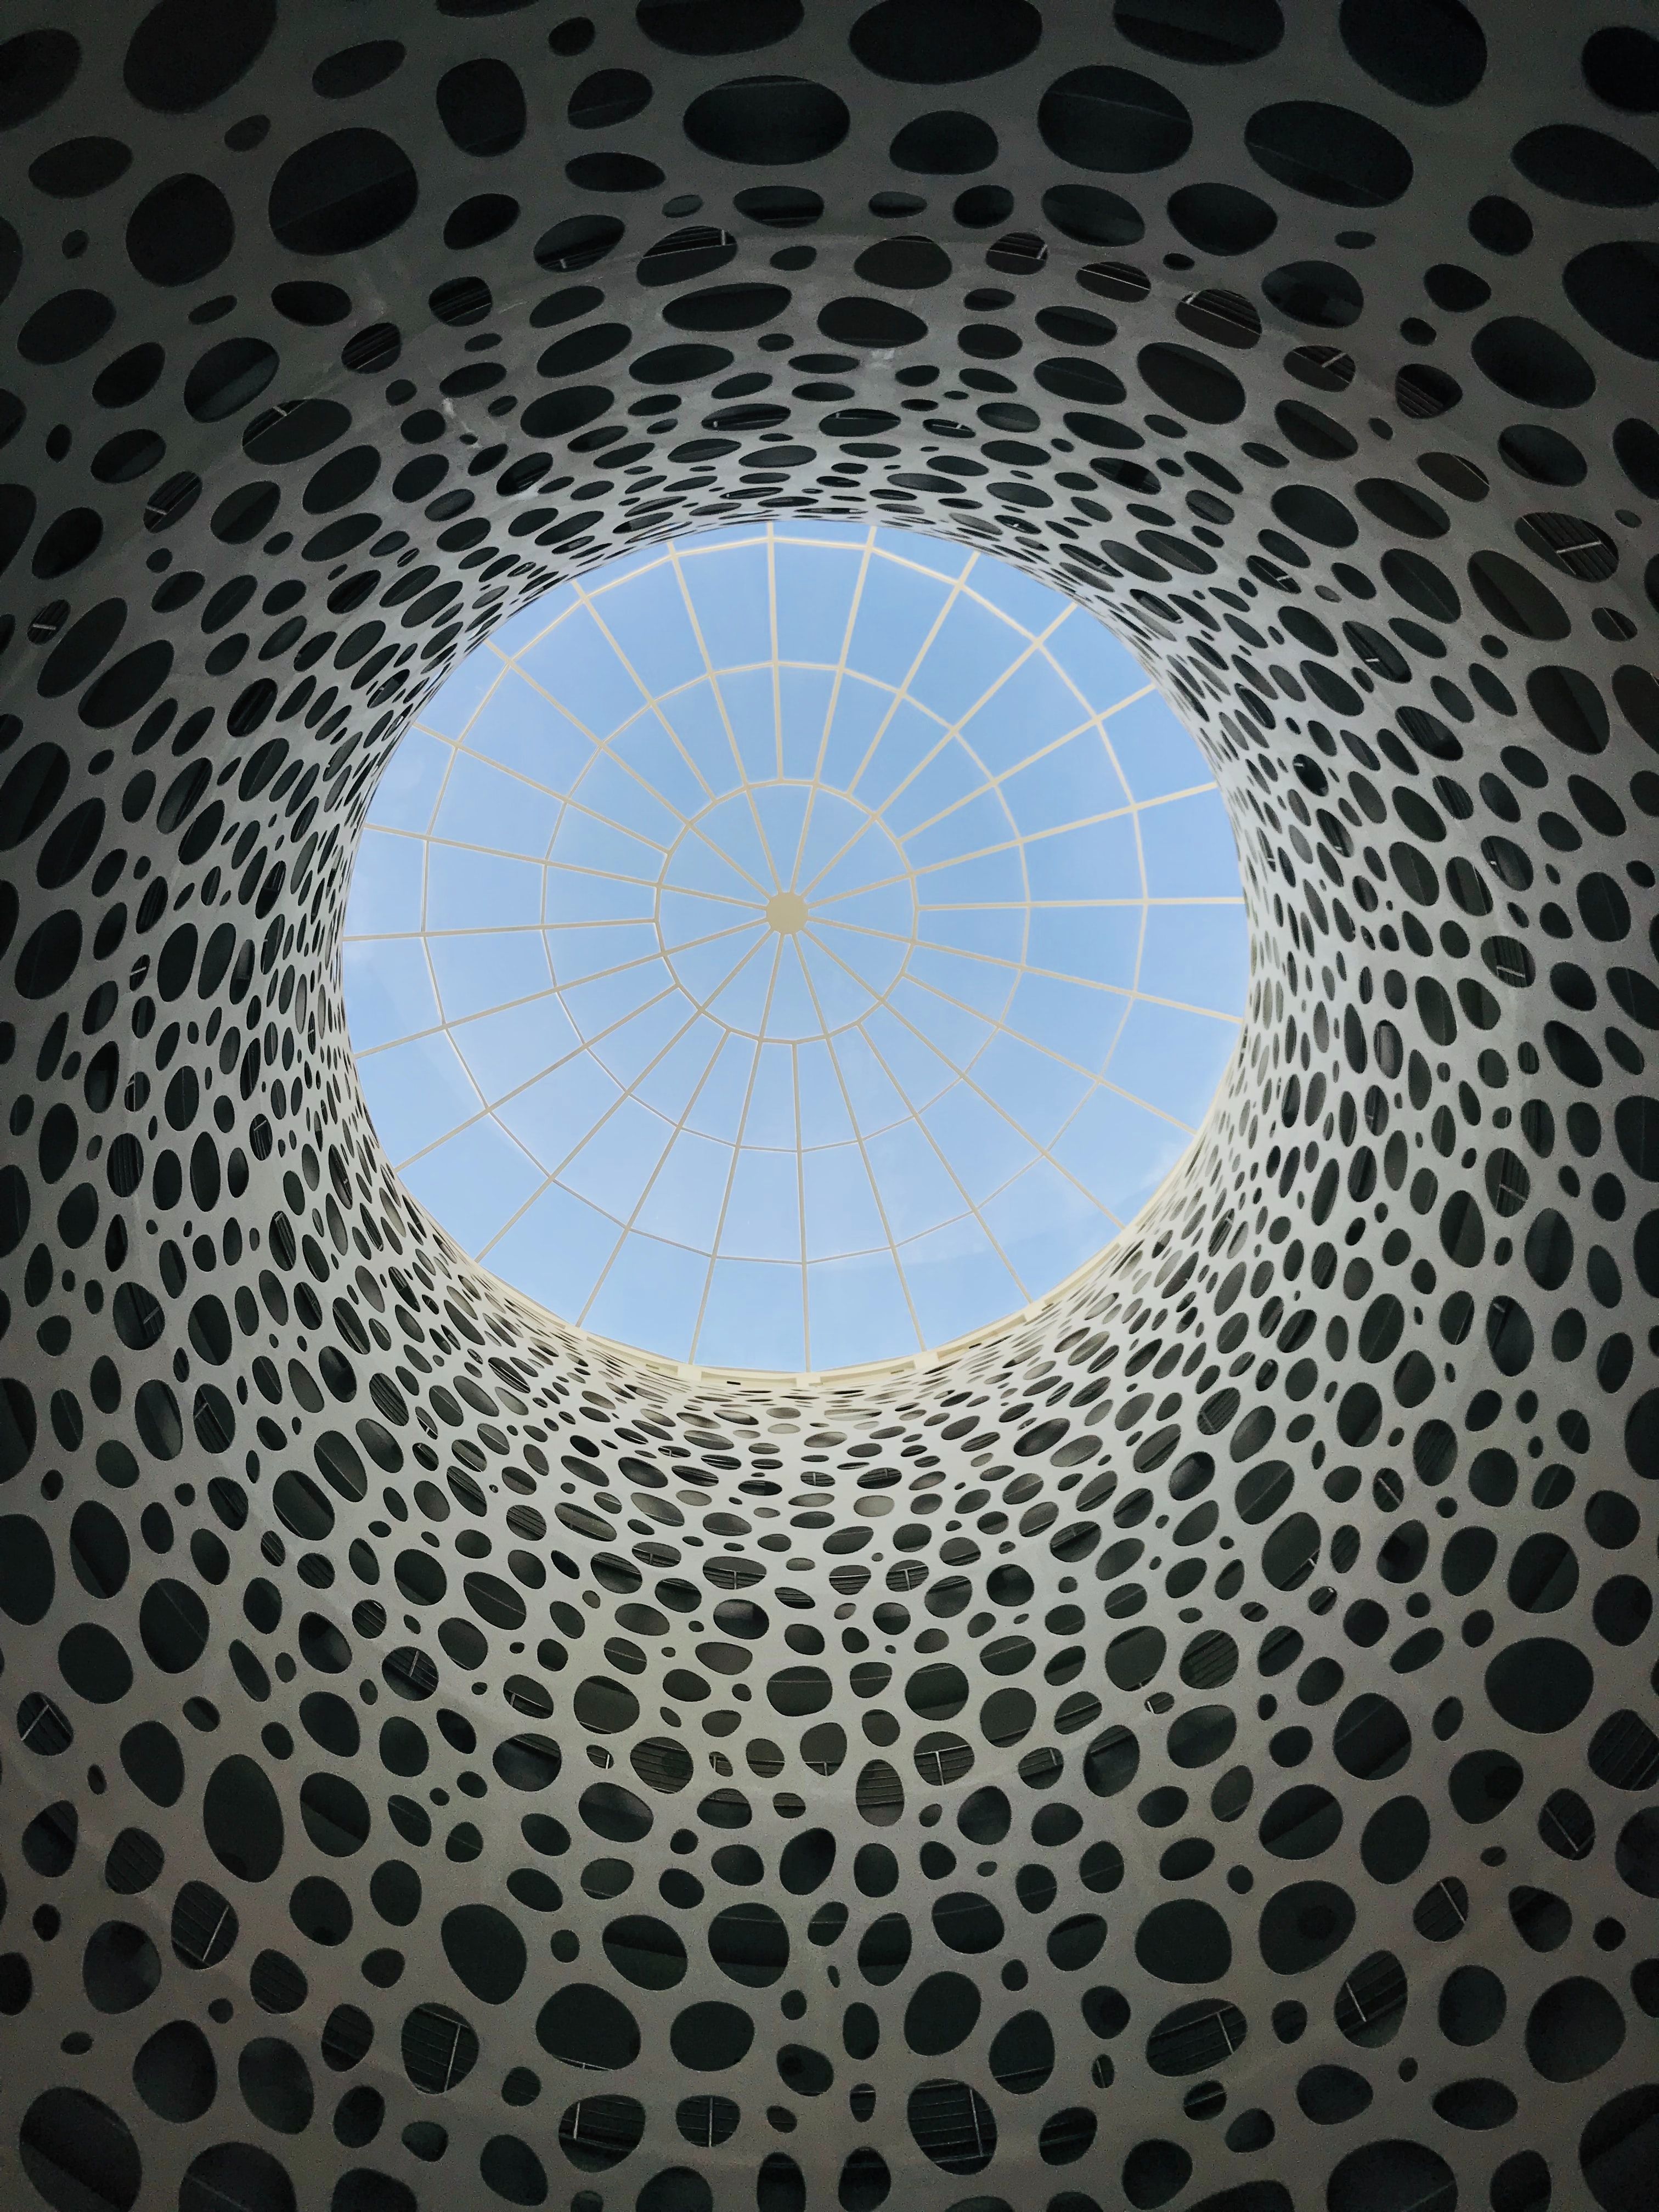 الهندسة المعمارية المعاصرة في قطر مع كوة زجاجية محاطة بجدران فنية منقوشة.